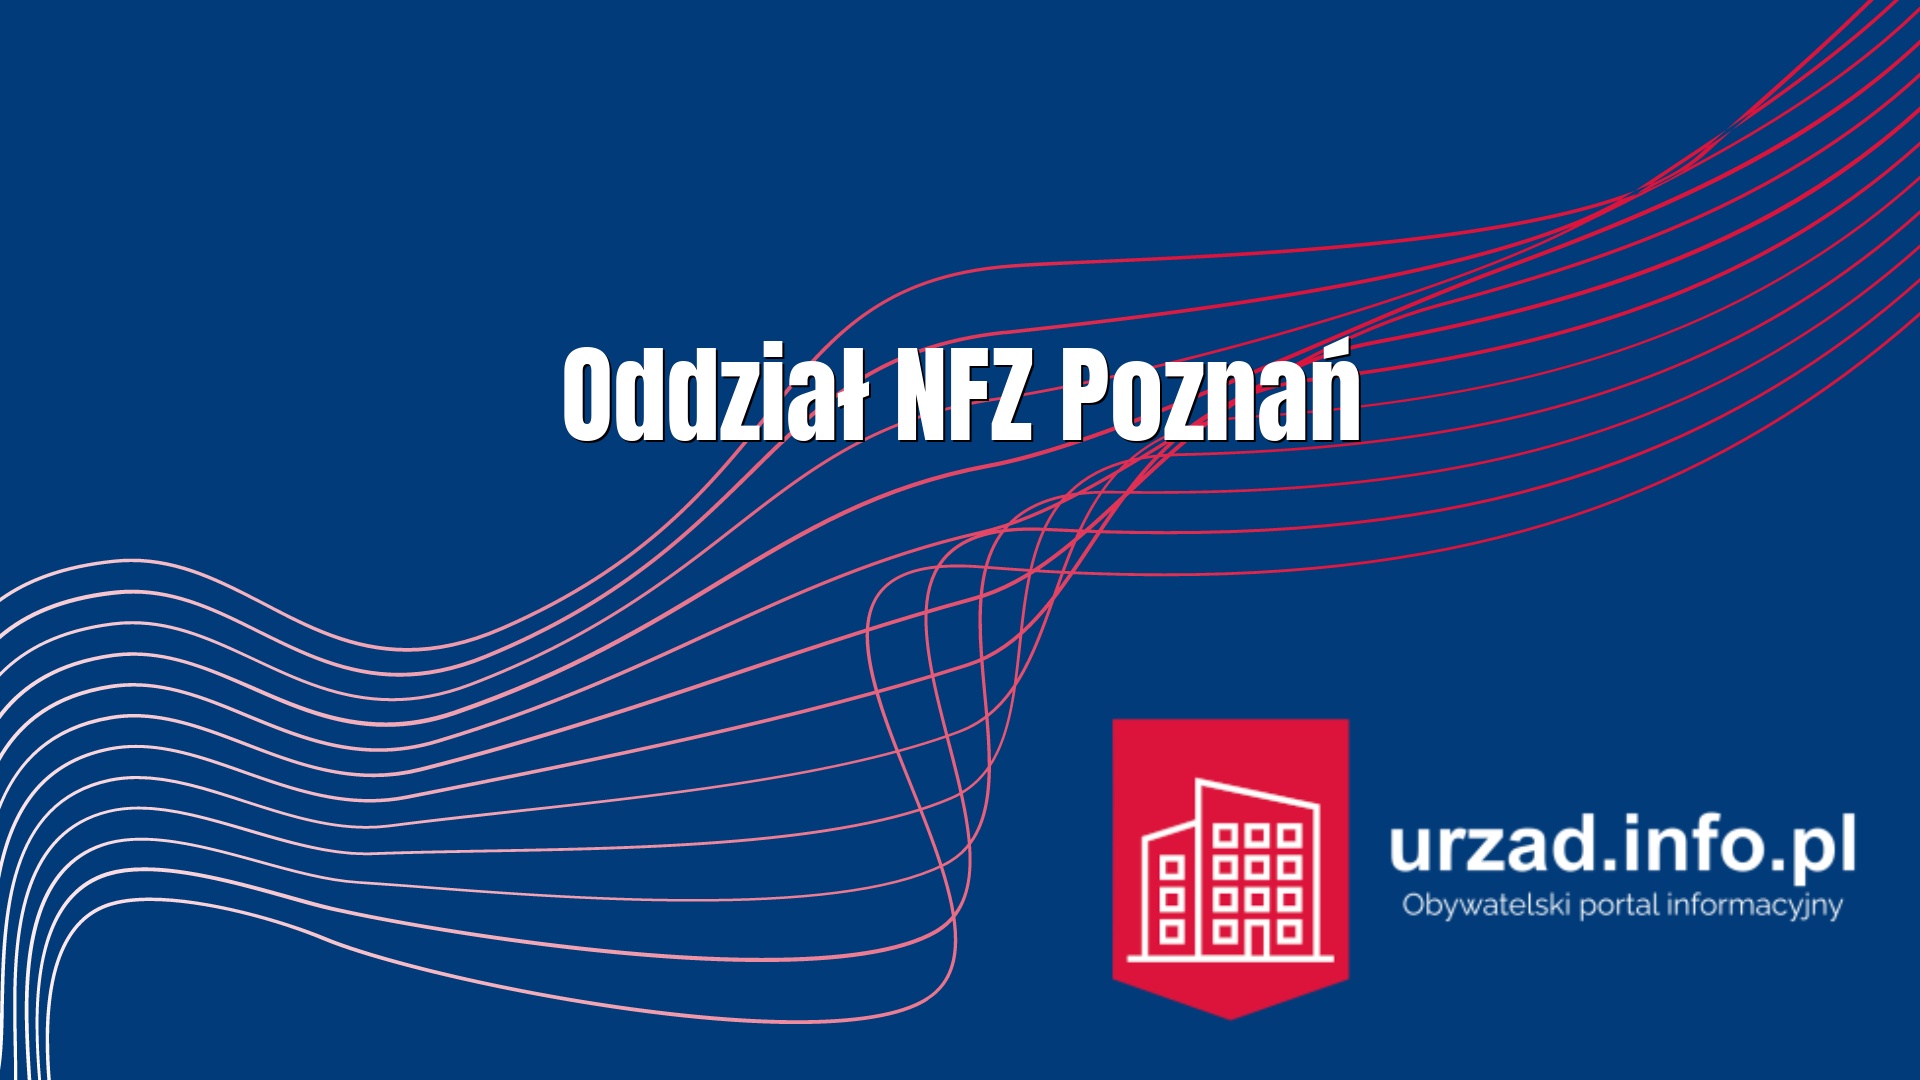 Wielkopolski Oddział Wojewódzki NFZ Poznań